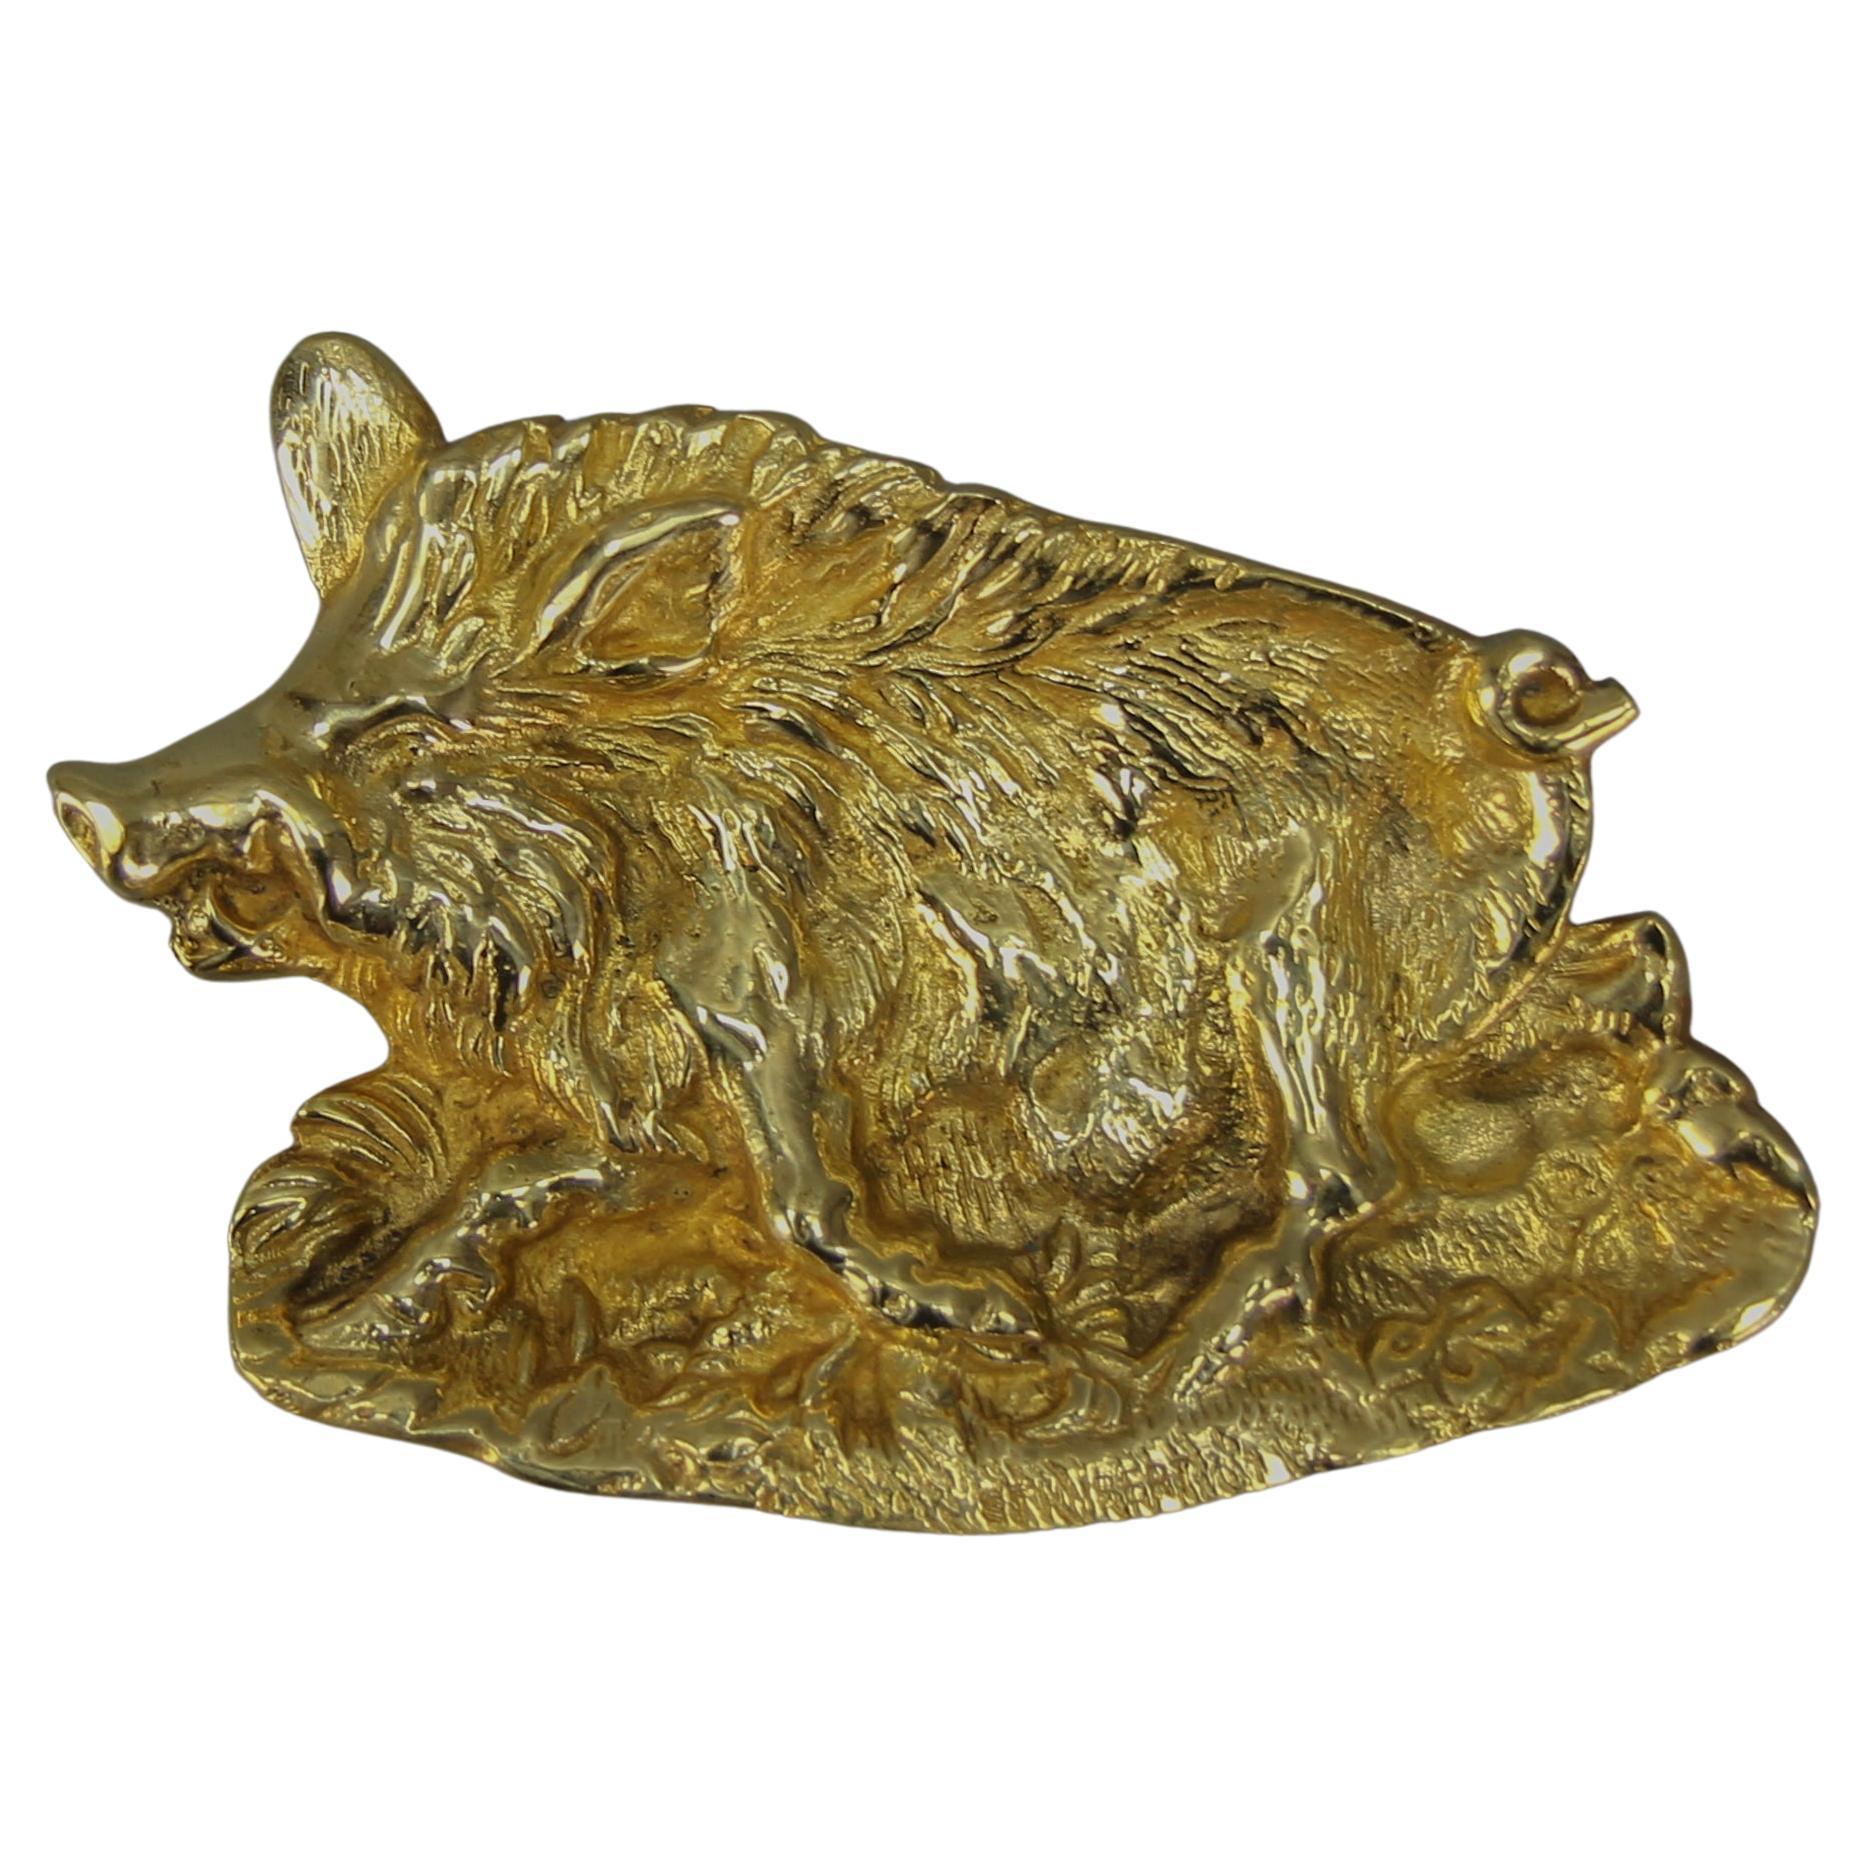 Kartentablett oder Anstecknadeltablett aus Bronze, Ablageschale in Form eines Wildfischs